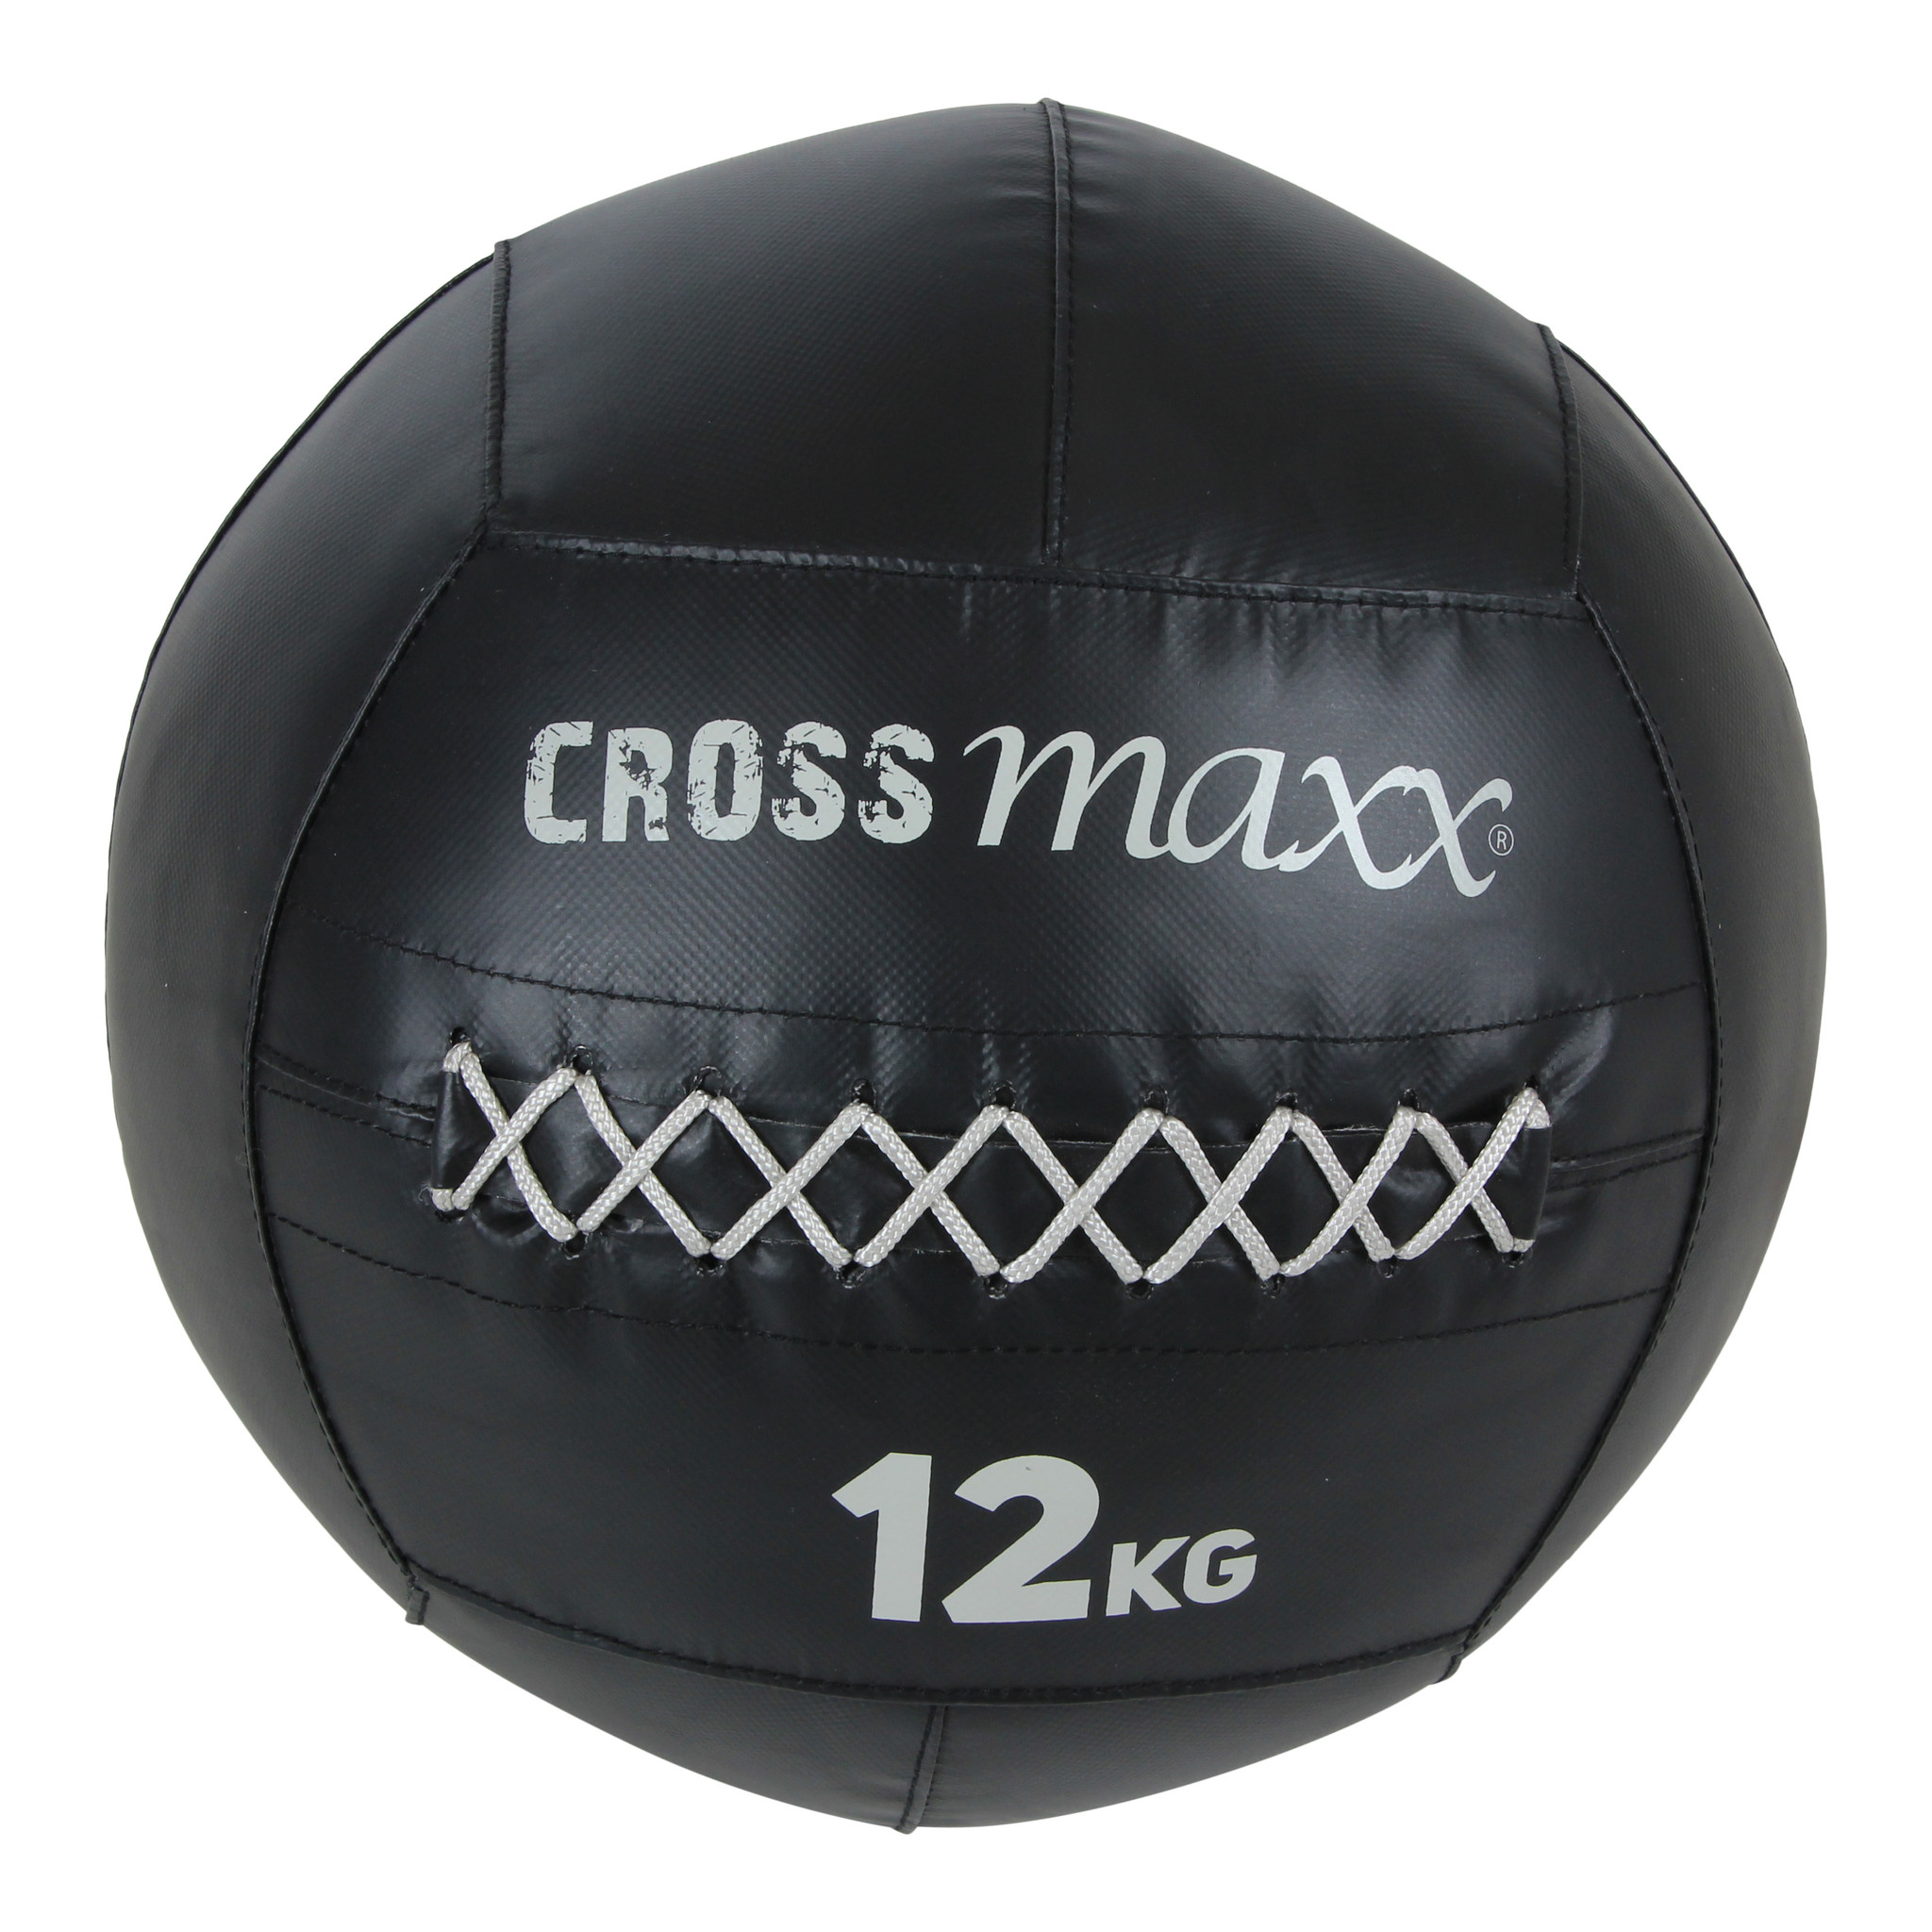 Crossmaxx PRO Wall Ball 12 kg